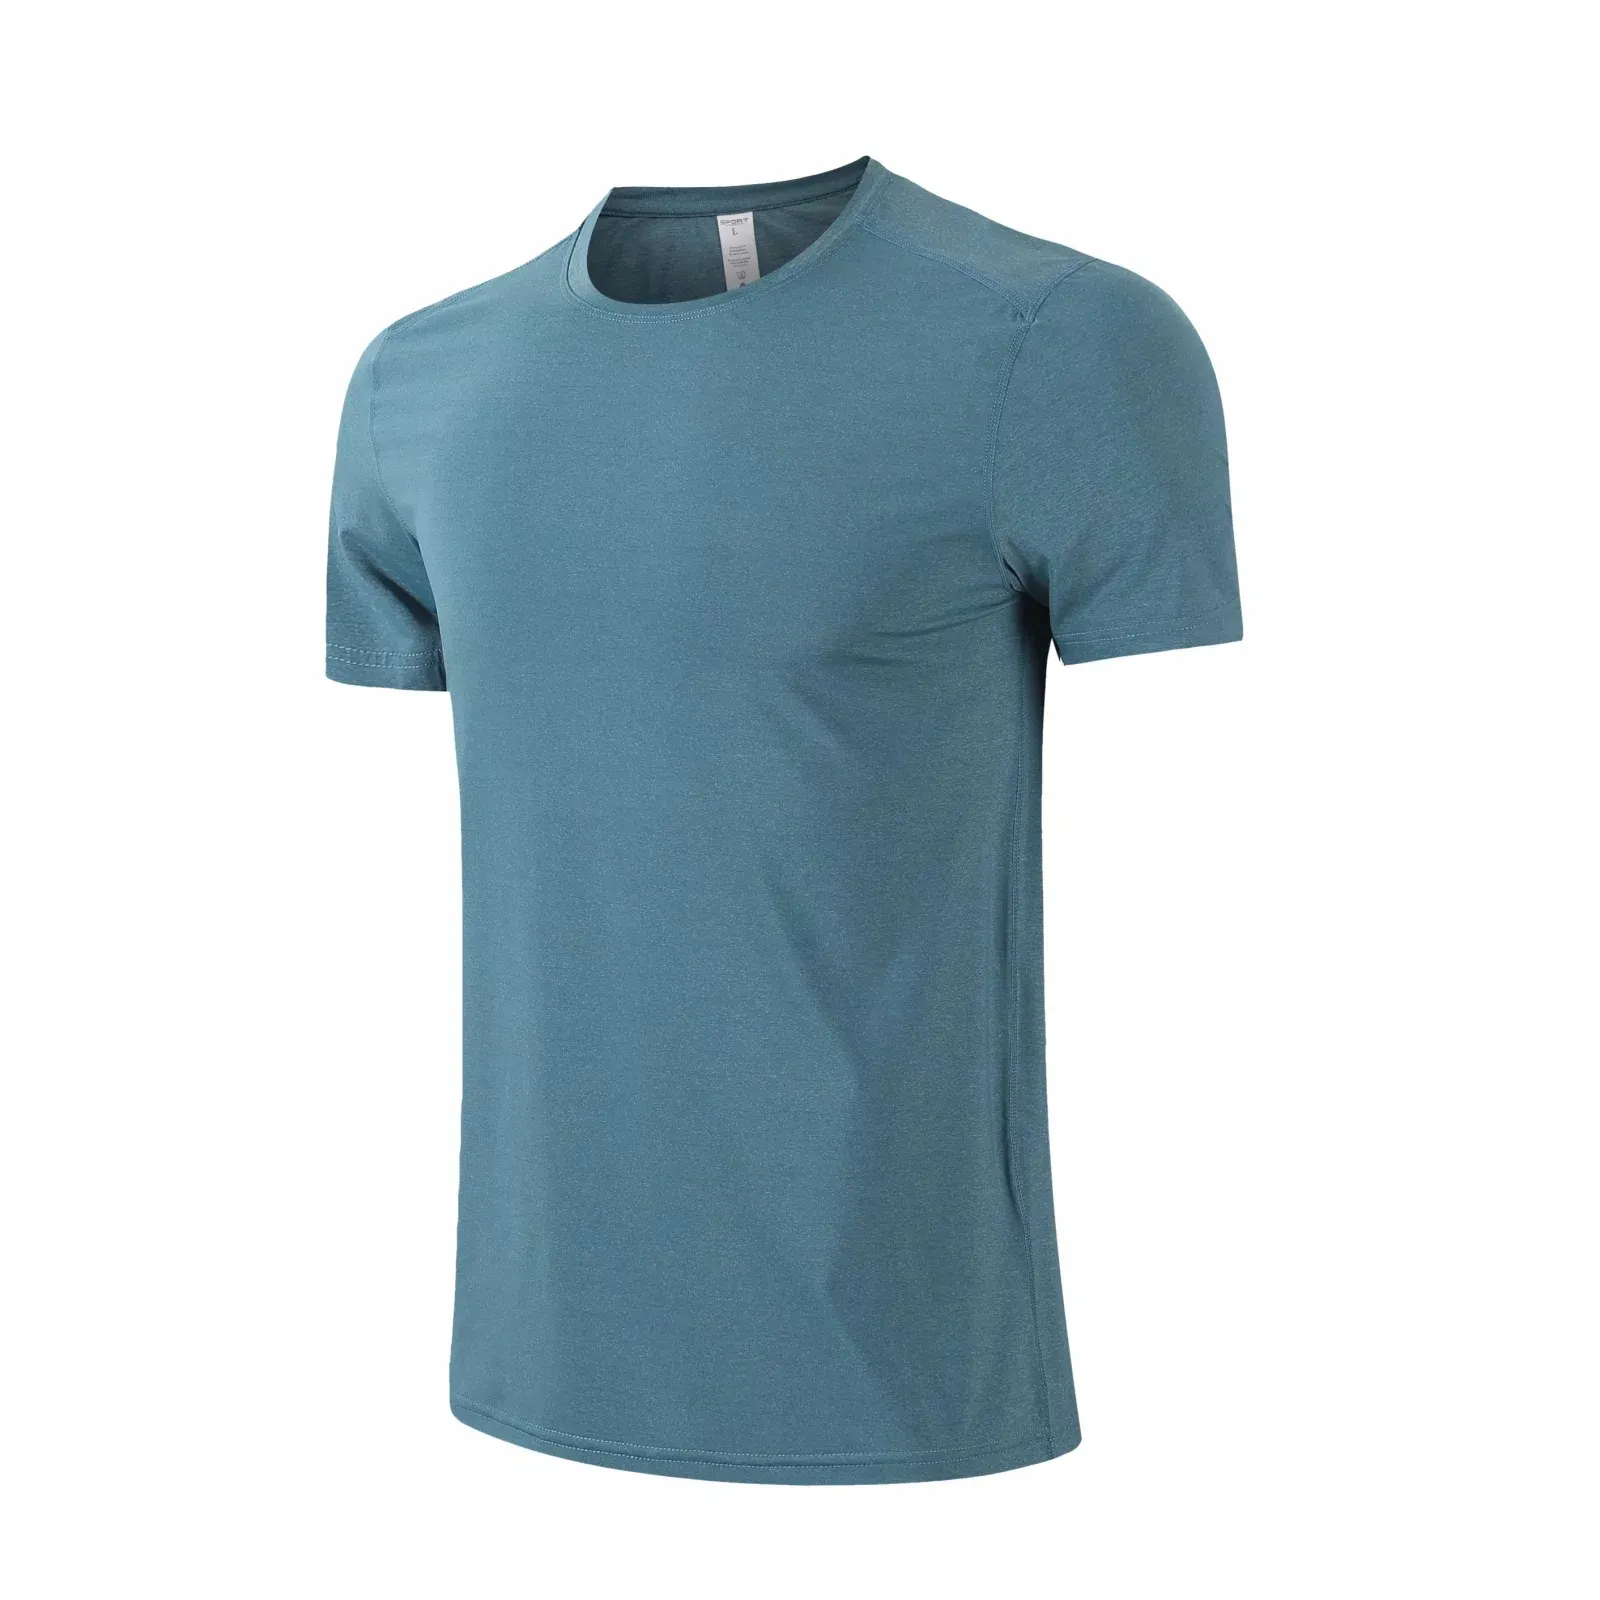 Yeni koşu spor T-shirt erkekler sıska hızlı kuru gömlek Gym Fitness eğitim süper elastik Tee üstleri erkek koşu giyim